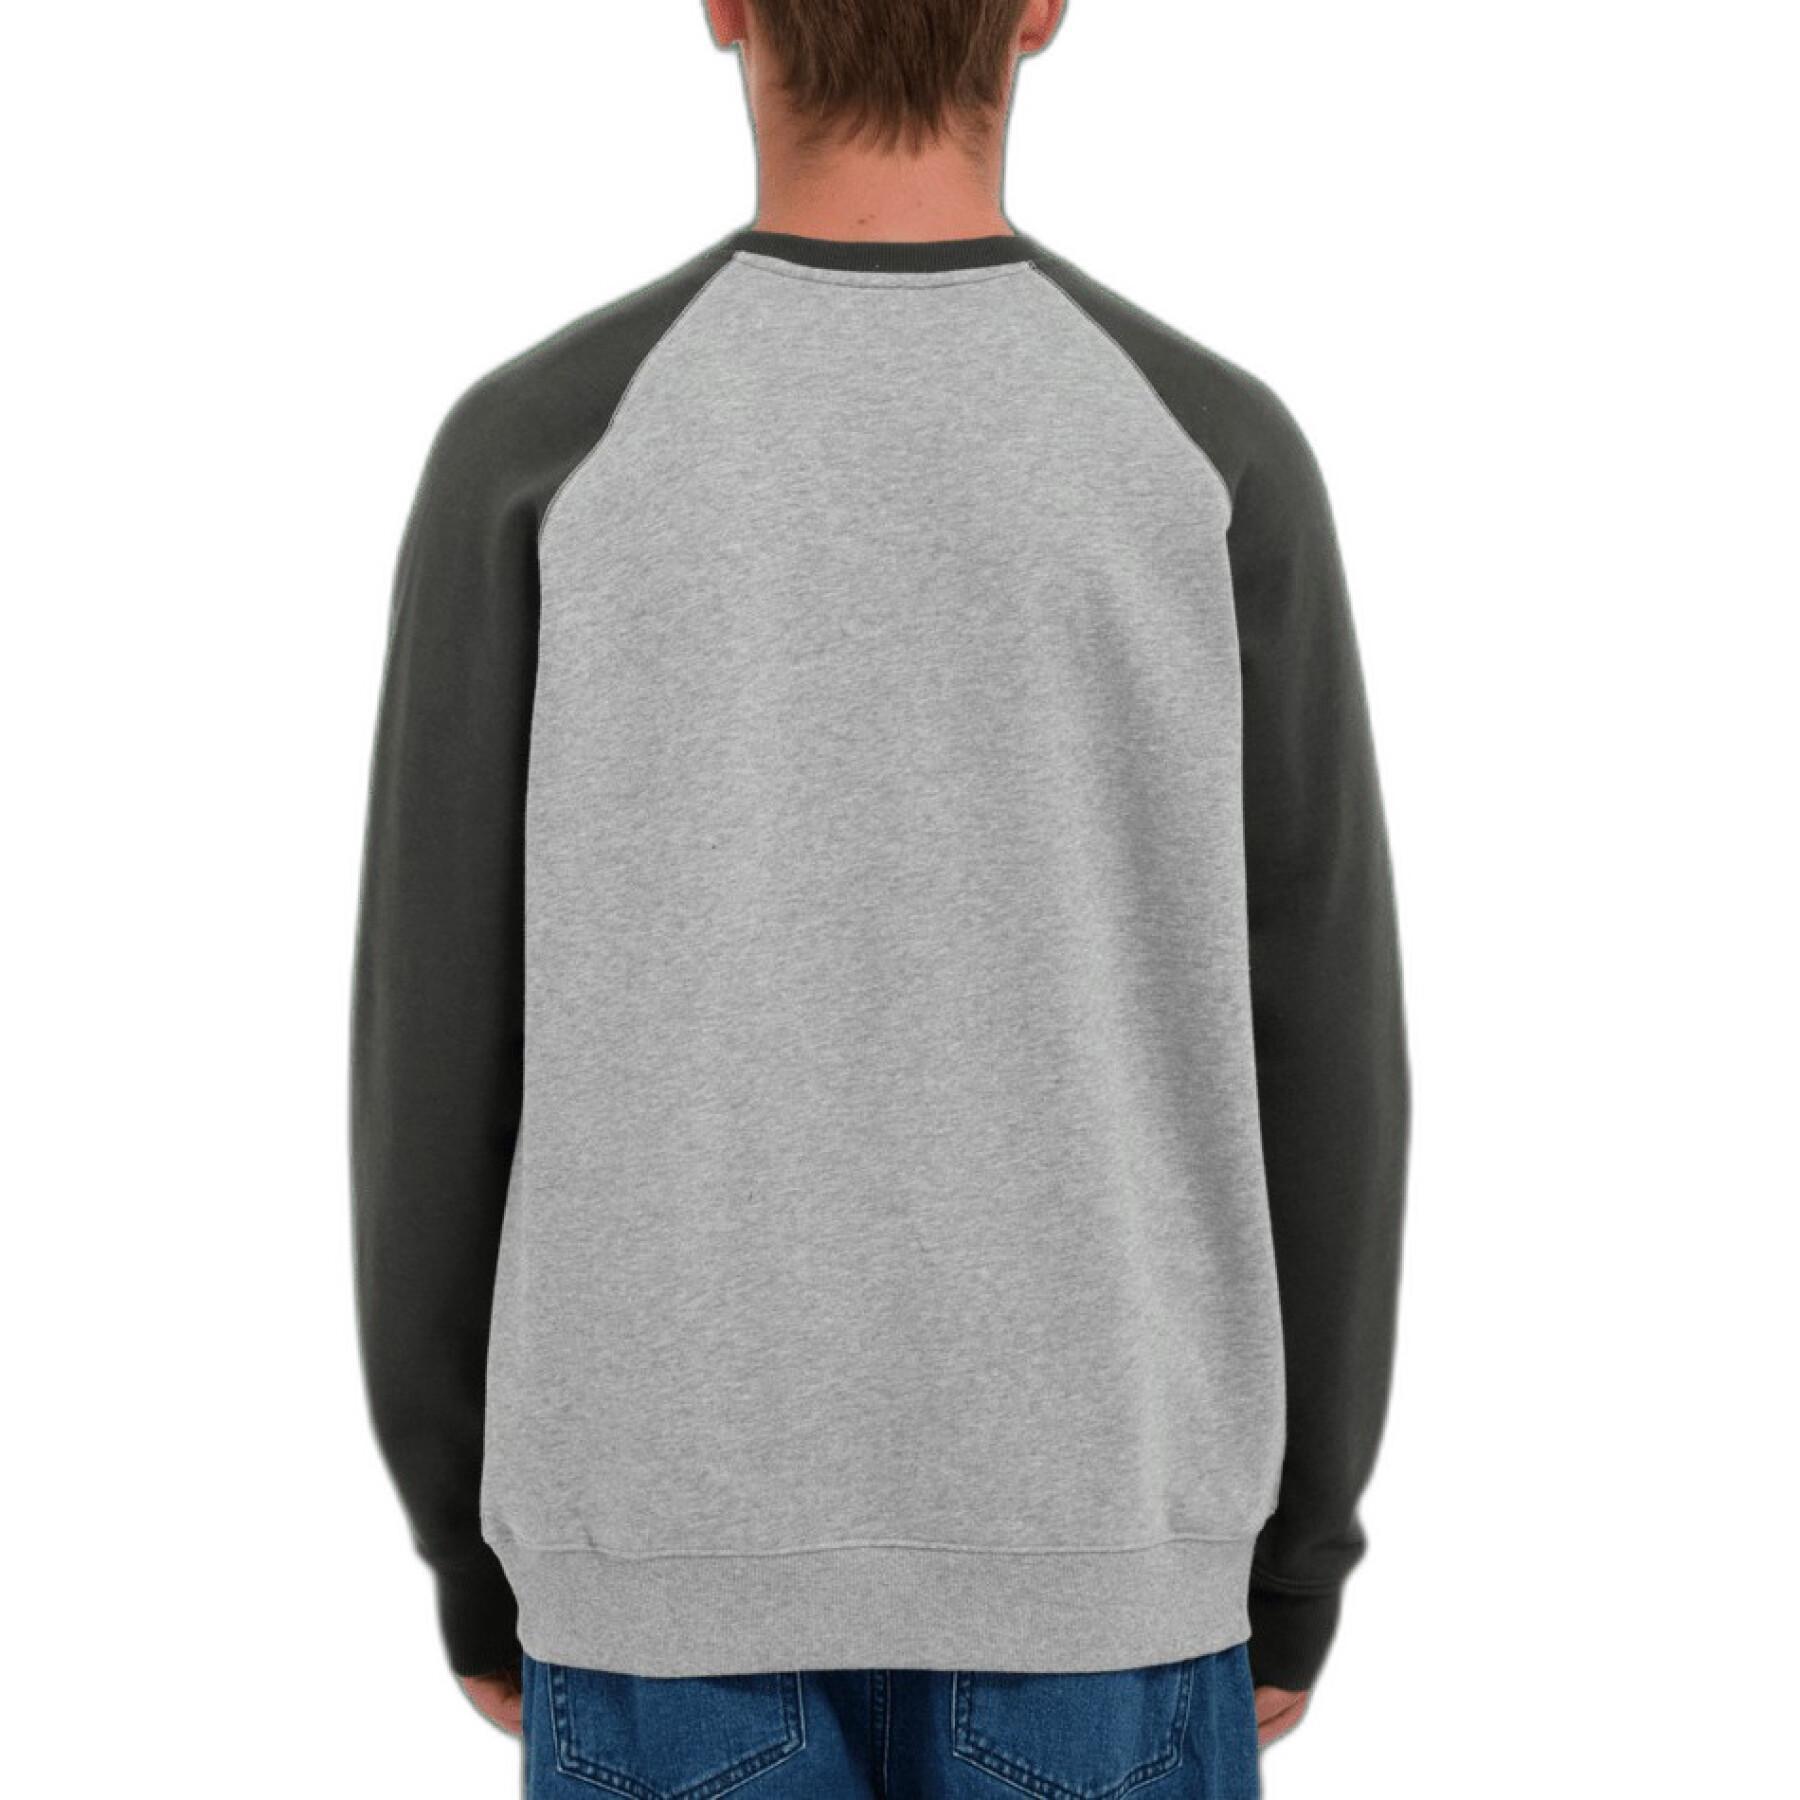 Volcom Homak Crew Sweatshirt - Stealth Grey | Meistverkaufte Produkte | Neue Produkte | Neueste Produkte | surfdevils.com